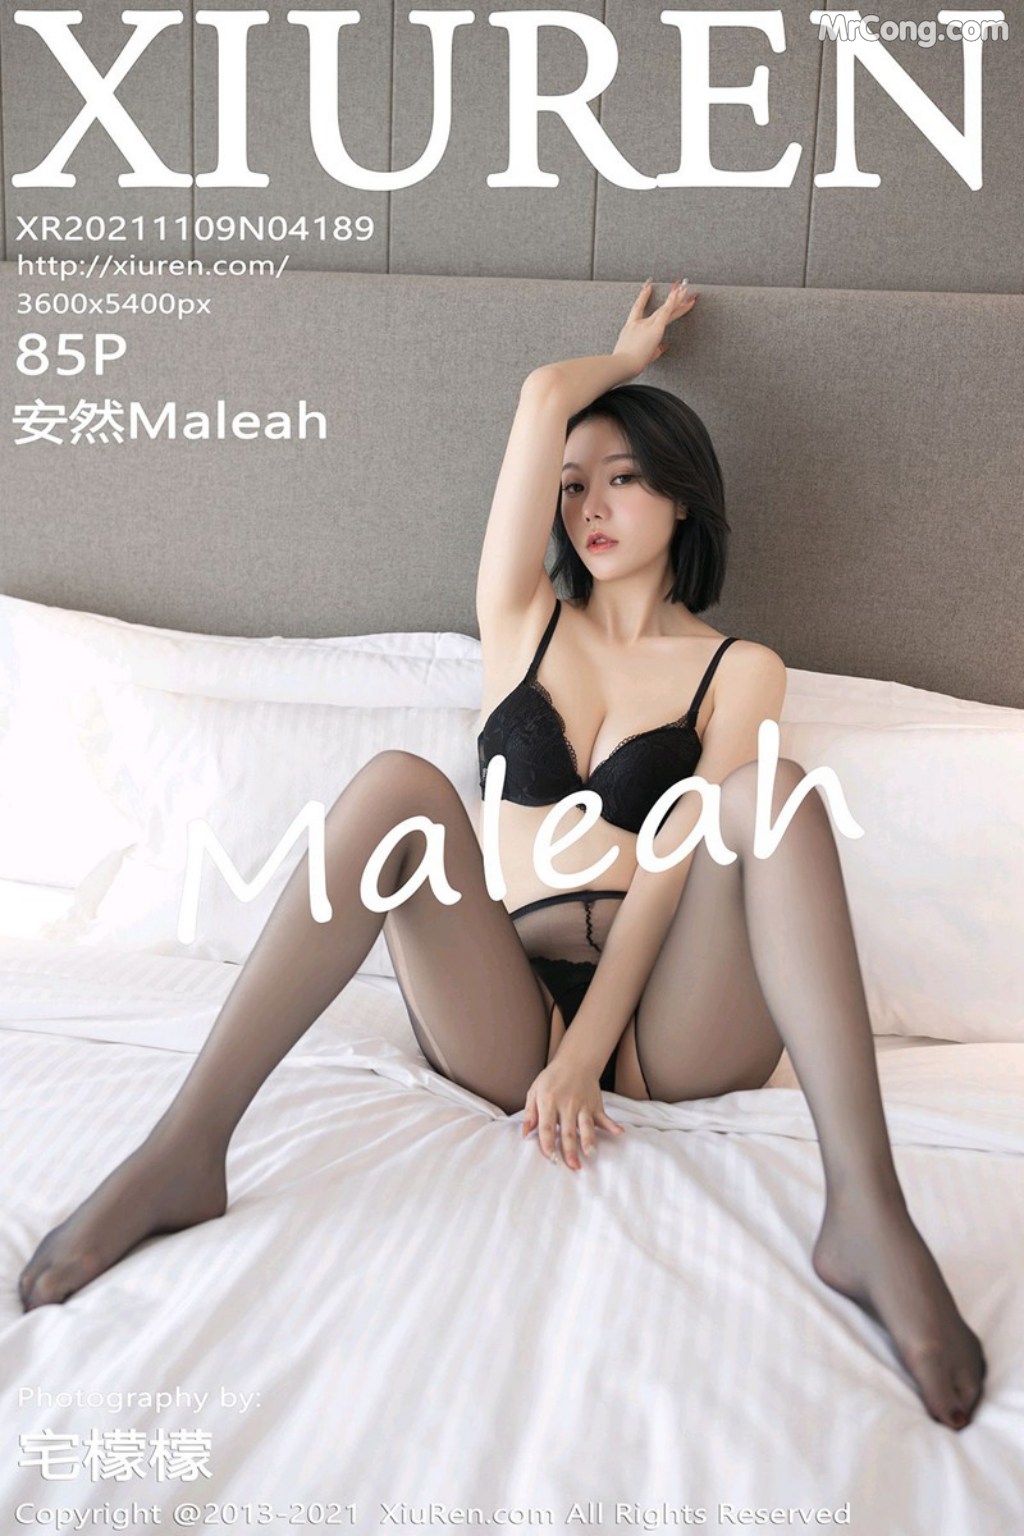 XIUREN No.4189: 安然Maleah (86 photos) photo 5-5